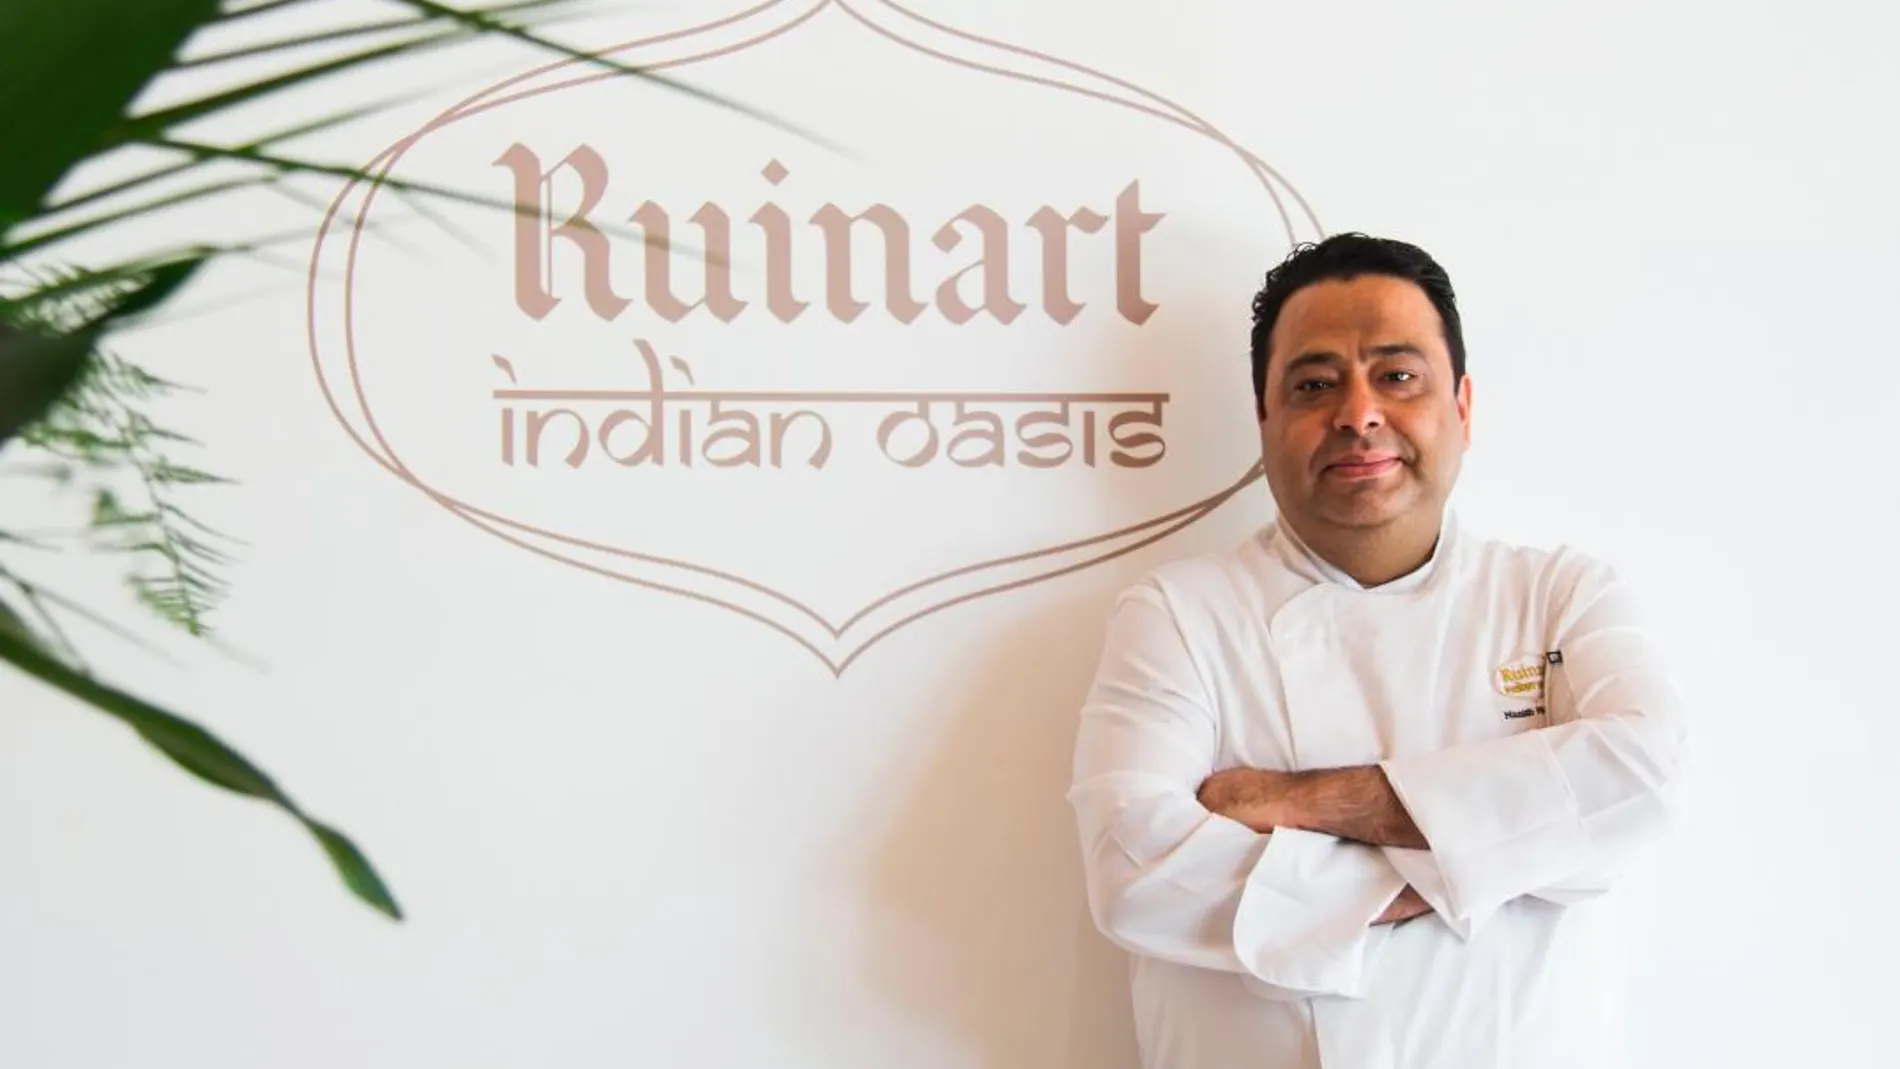 El cocinero indio Manish Mehrotra en el espacio “Ruinart Indian Oasis”